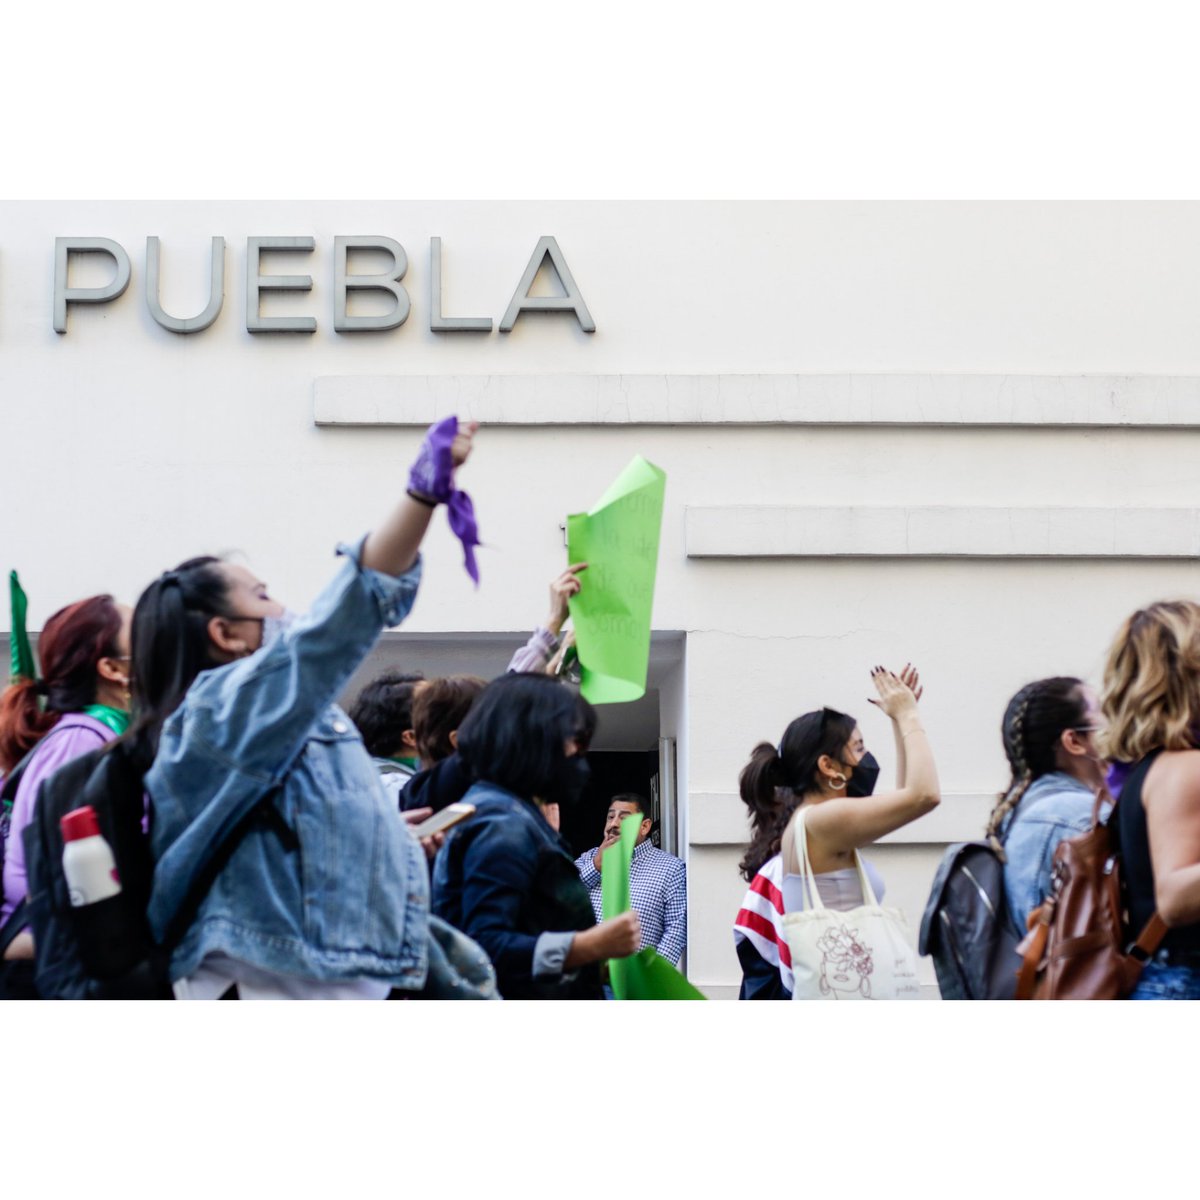 Ya para terminar el día, algo del trabajo de hoy 📸 durante la marcha #feminista en #Puebla. 

#8M #DiaInternacionalDeLaMujer #DiaInternacionalDeLasMujeres #Diadelamujer2022